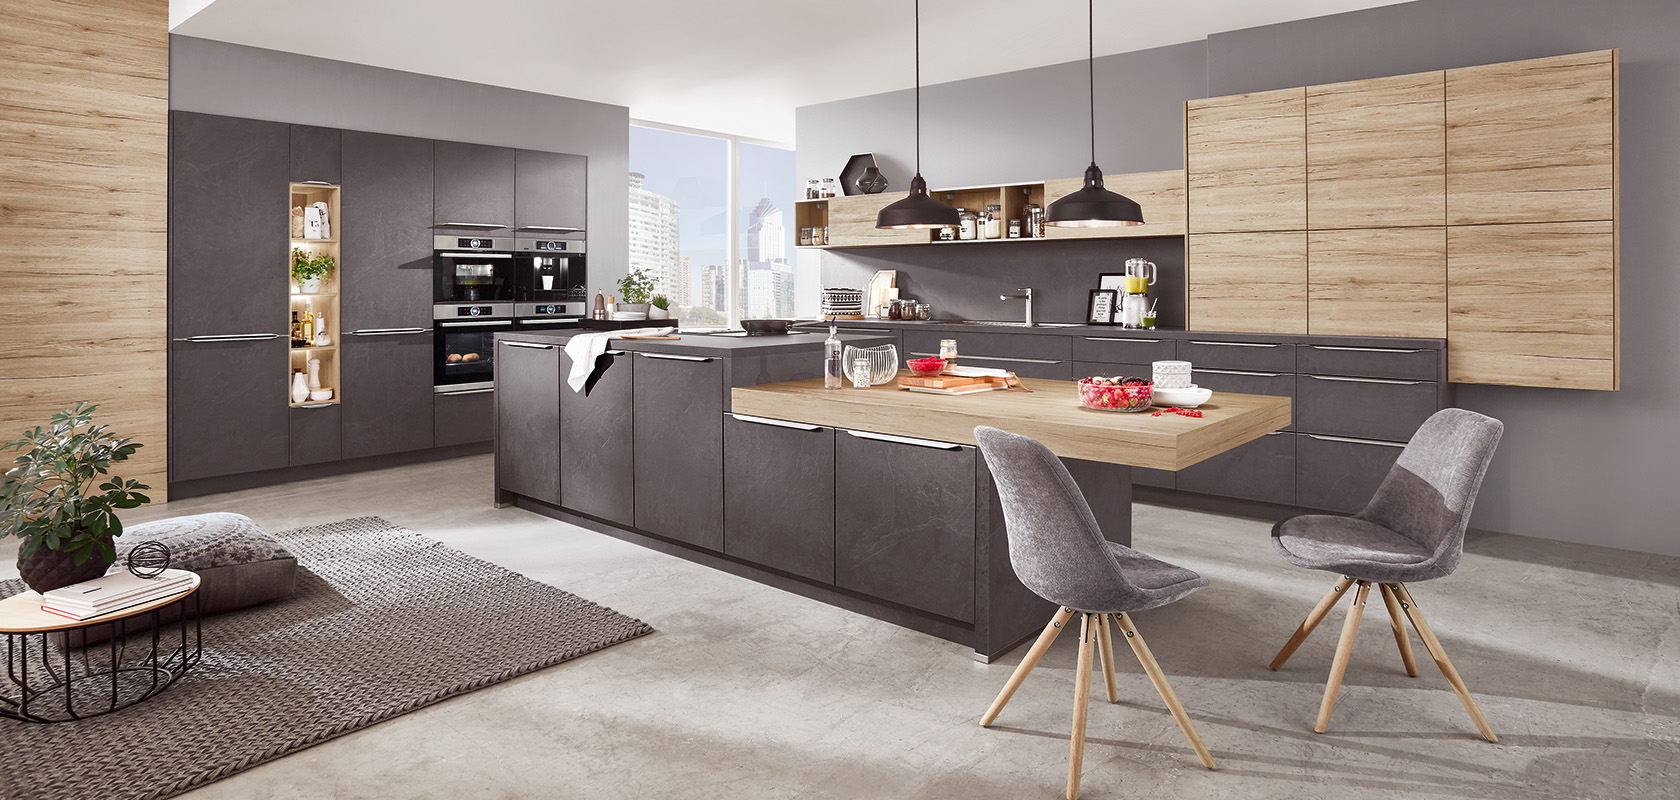 Design moderno dell'interno della cucina con eleganti armadi grigi e in legno, elettrodomestici integrati e una zona pranzo elegante con posti a sedere confortevoli e vista sulla città.